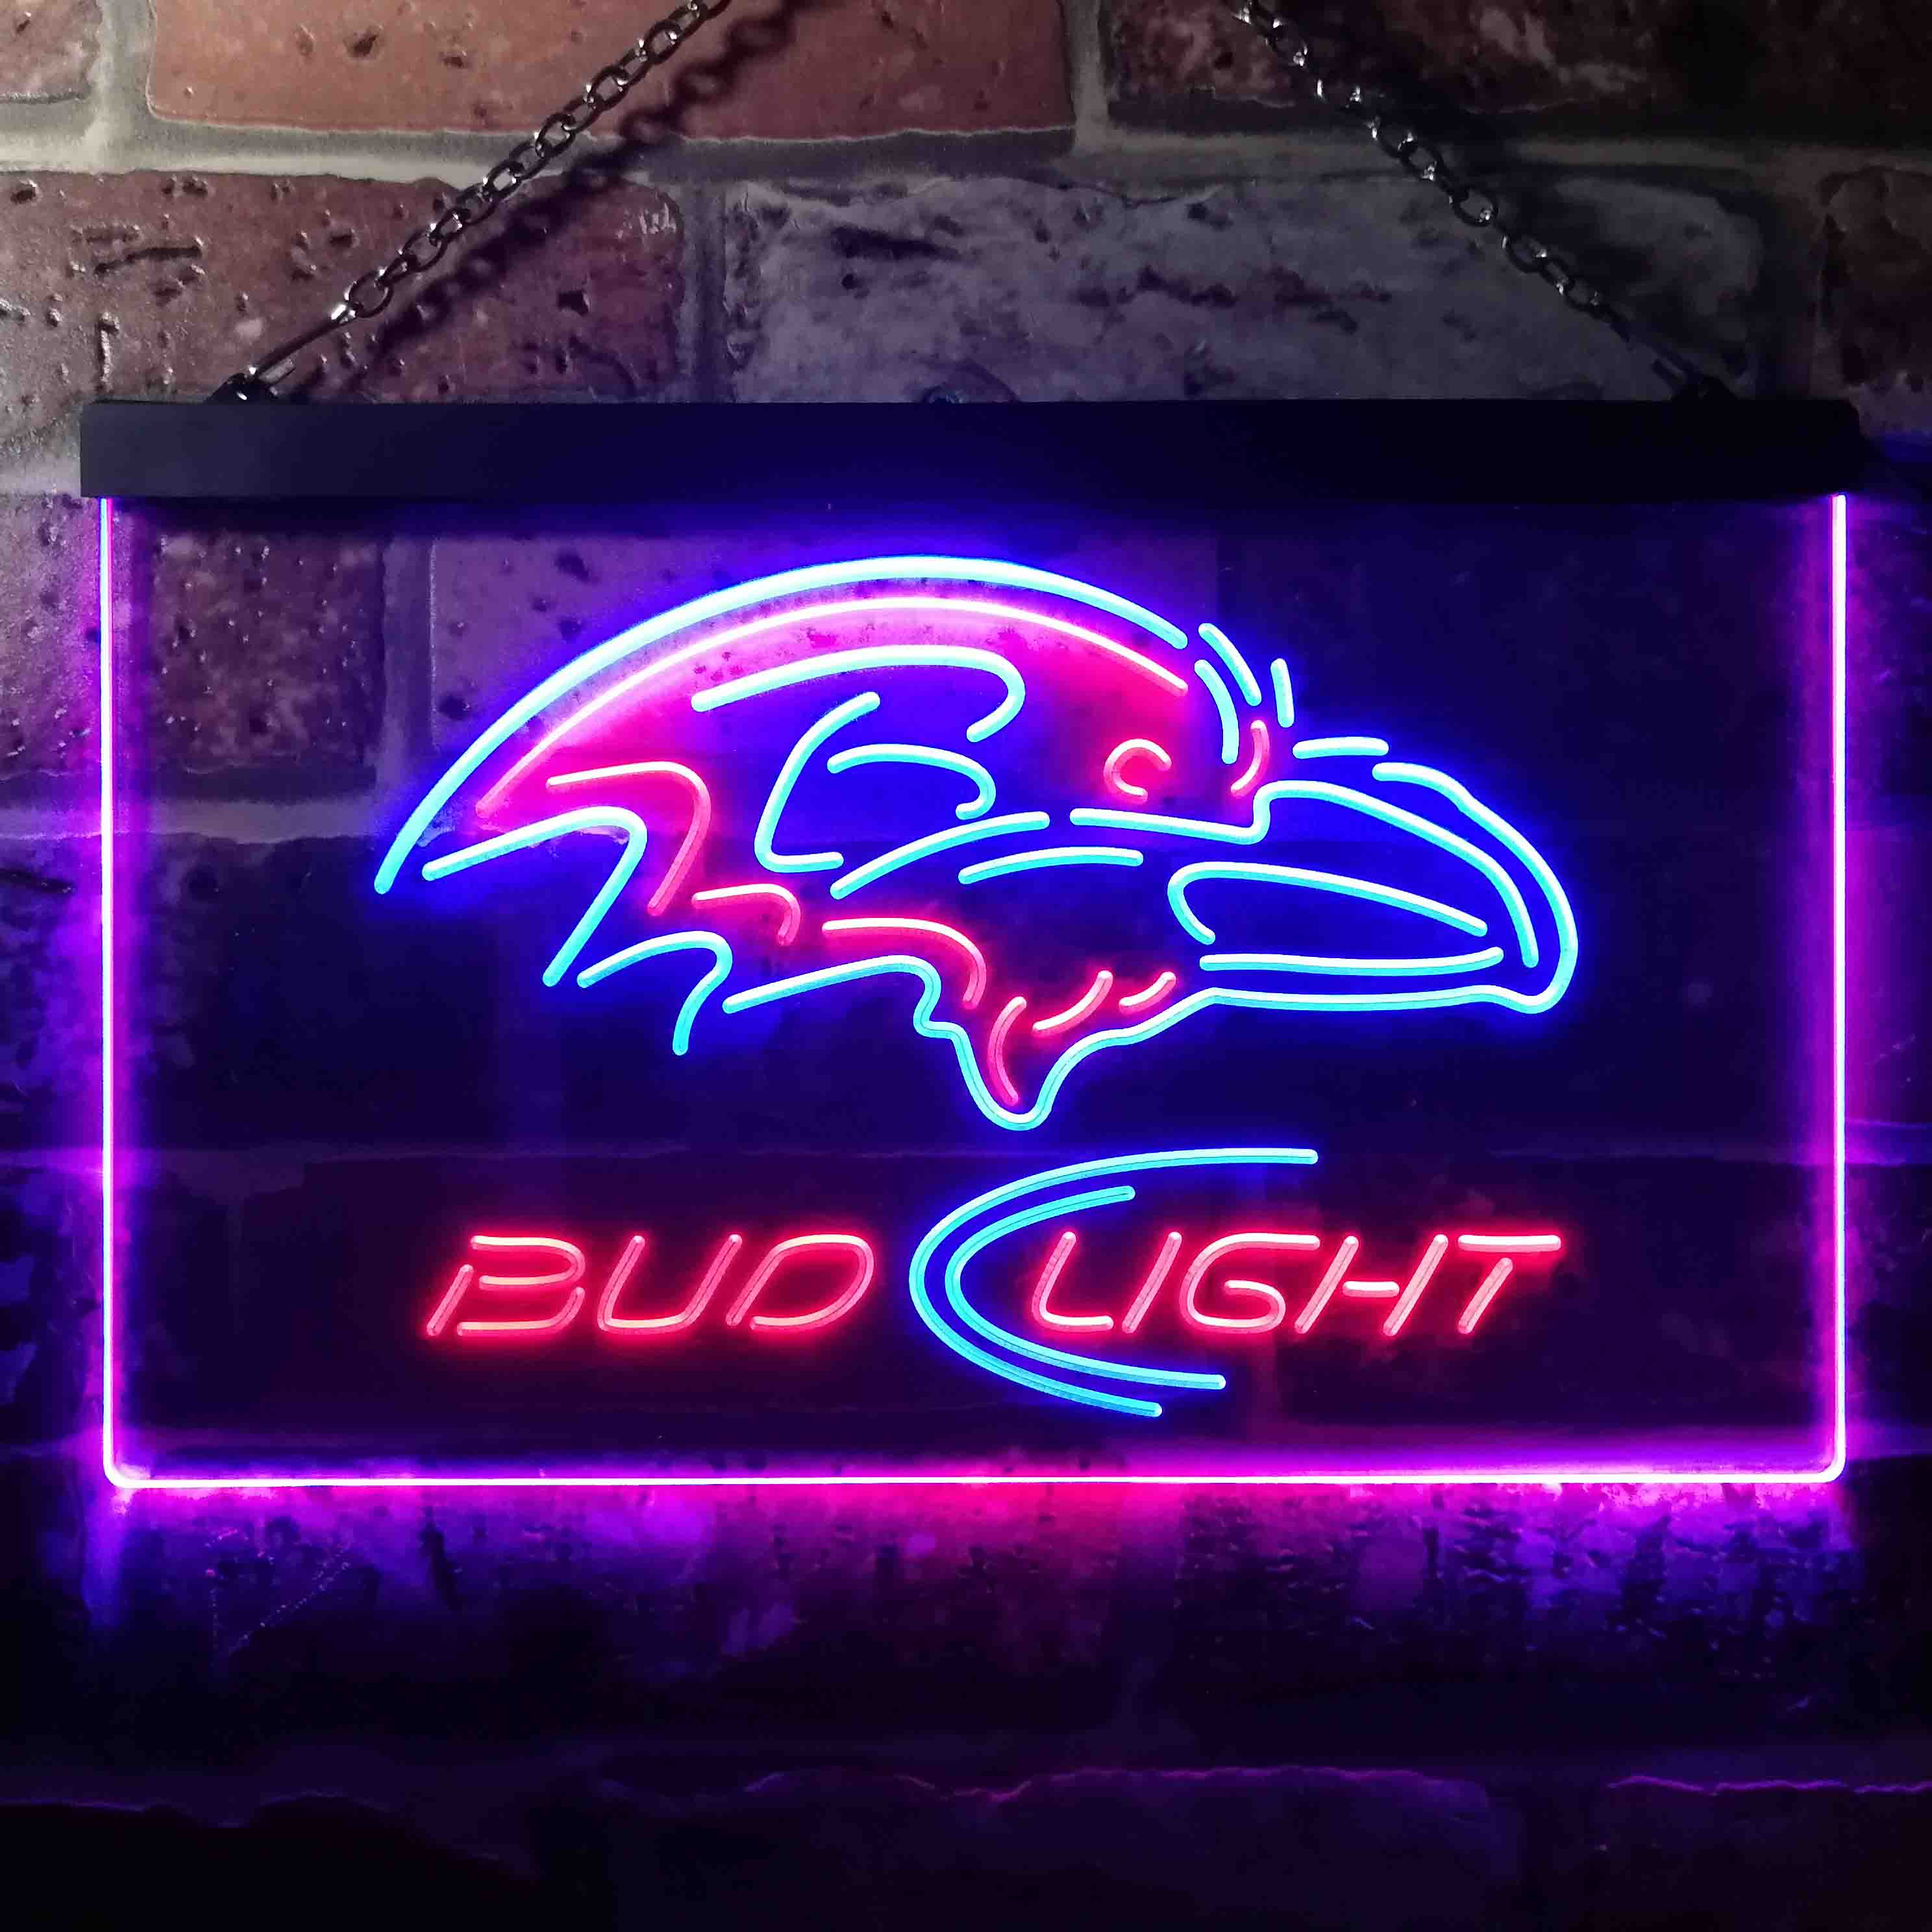 Baltimore Ravens Bud Light  Neon-Like LED Sign